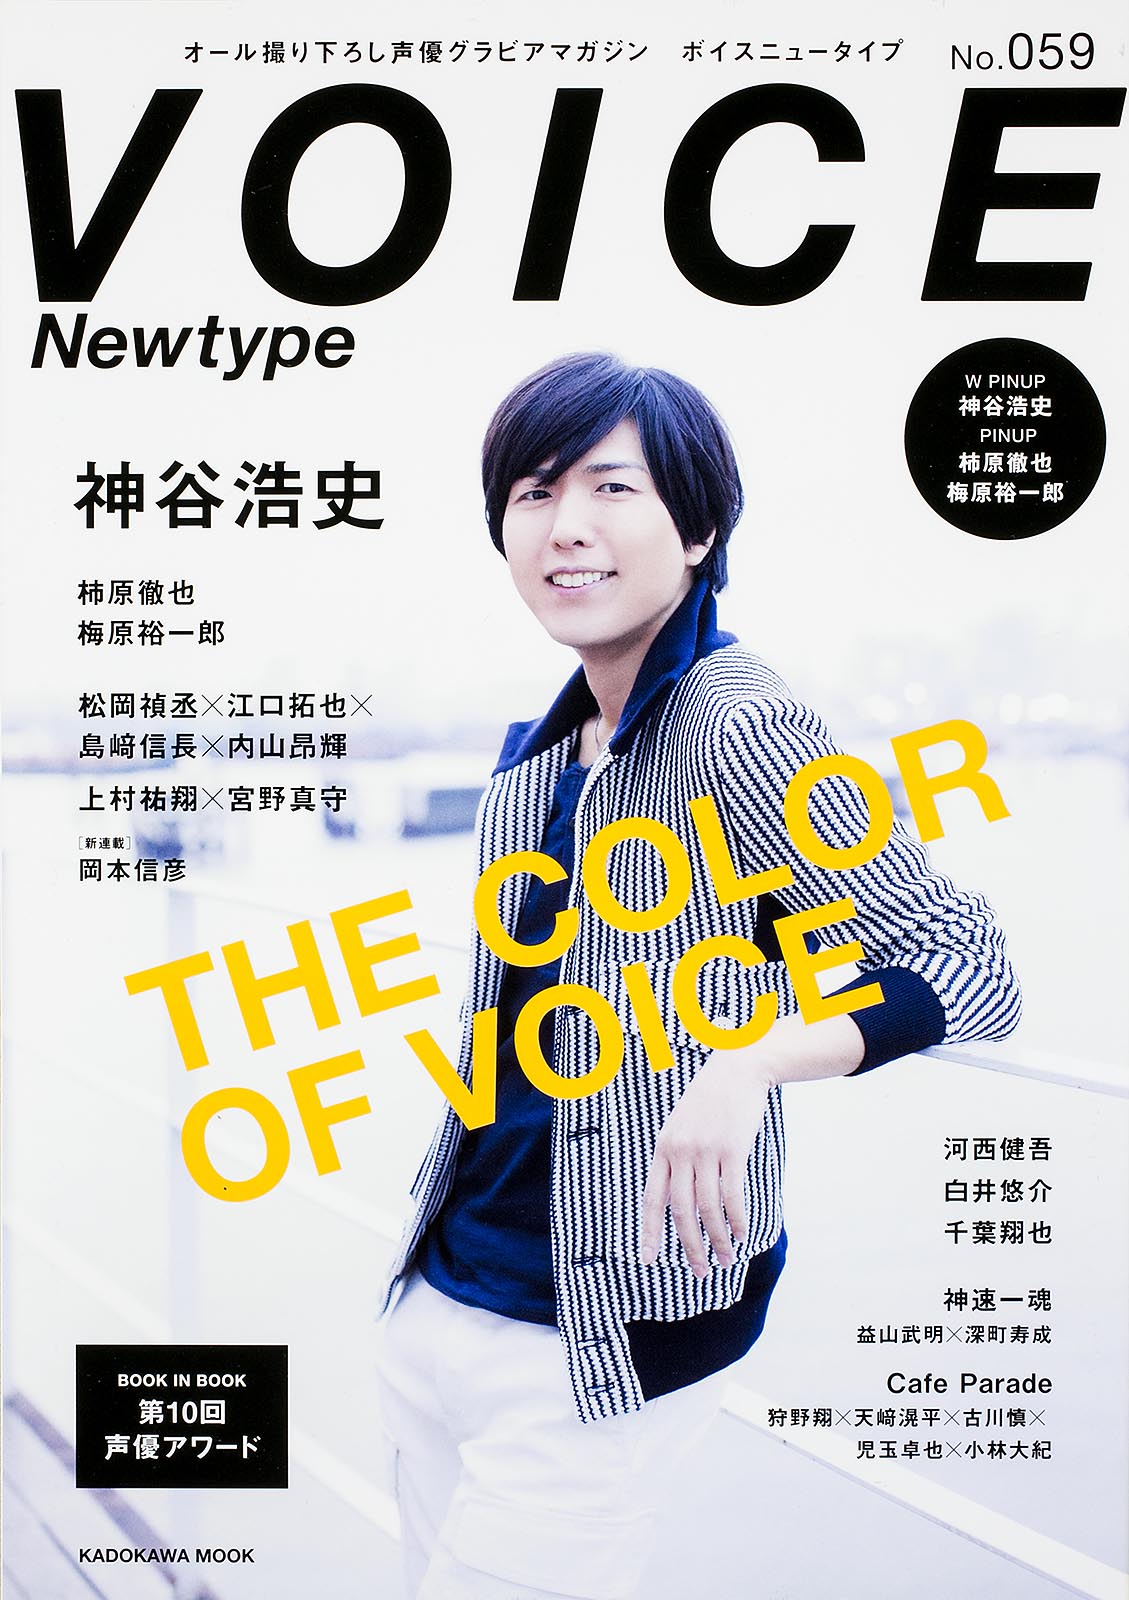 Voice Newtype No.059の商品画像